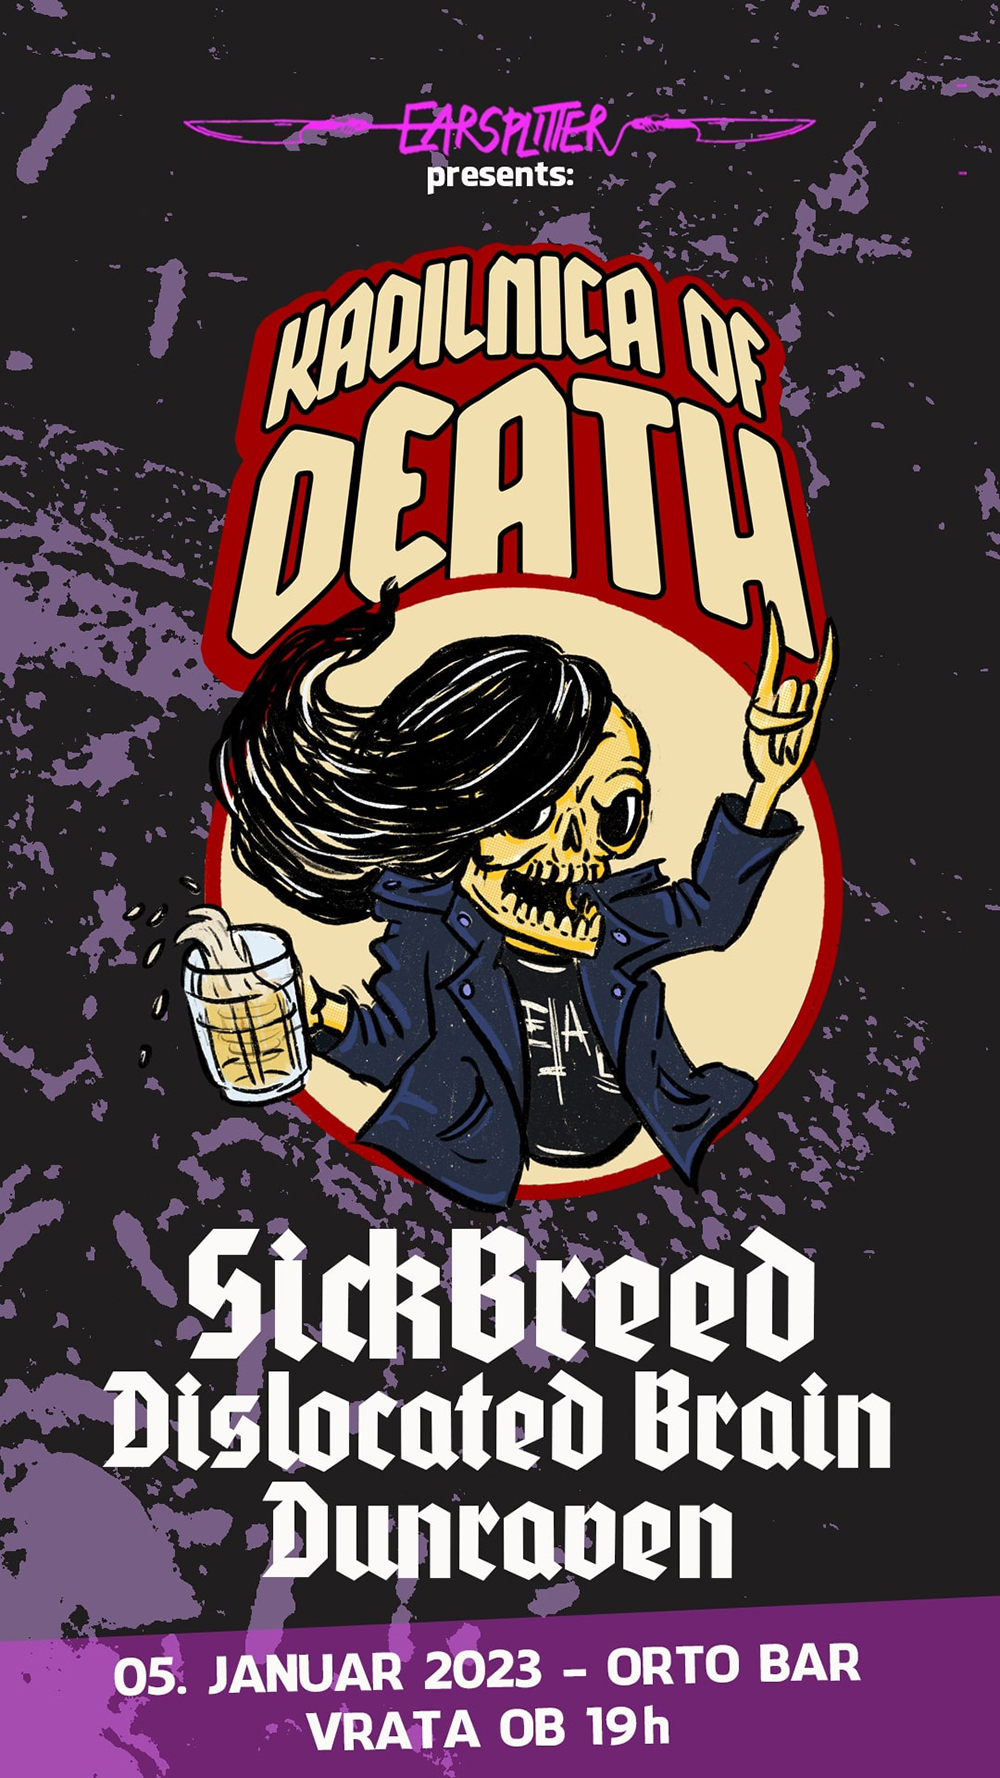 05.01.2023 - Kadilnica of Death: SickBreed (Slo), Dislocated Brain (Slo), Dunraven (Slo) @ Orto Bar, Ljubljana